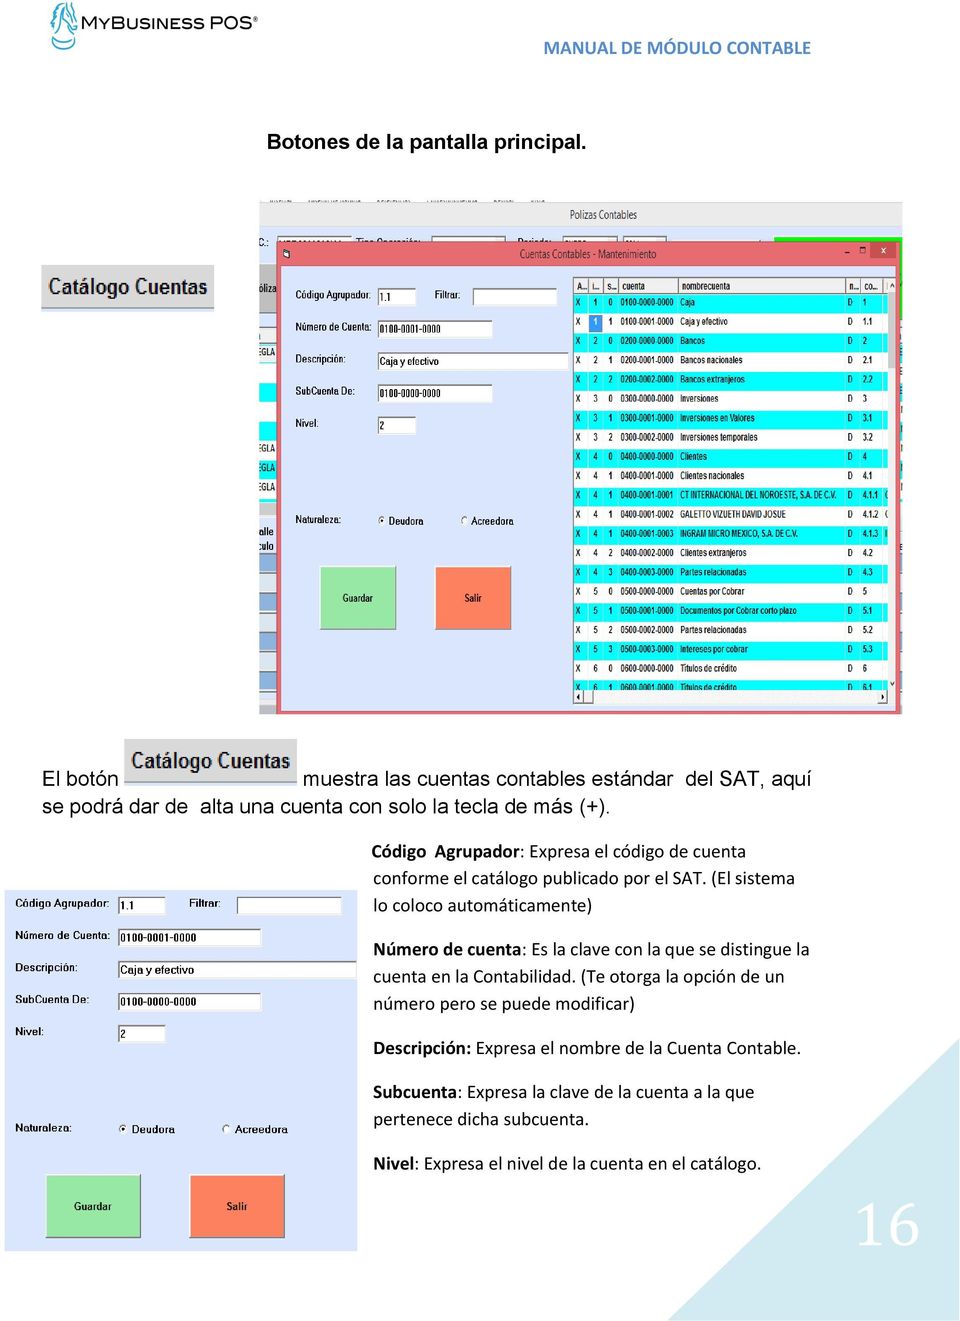 Código Agrupador: Expresa el código de cuenta conforme el catálogo publicado por el SAT.